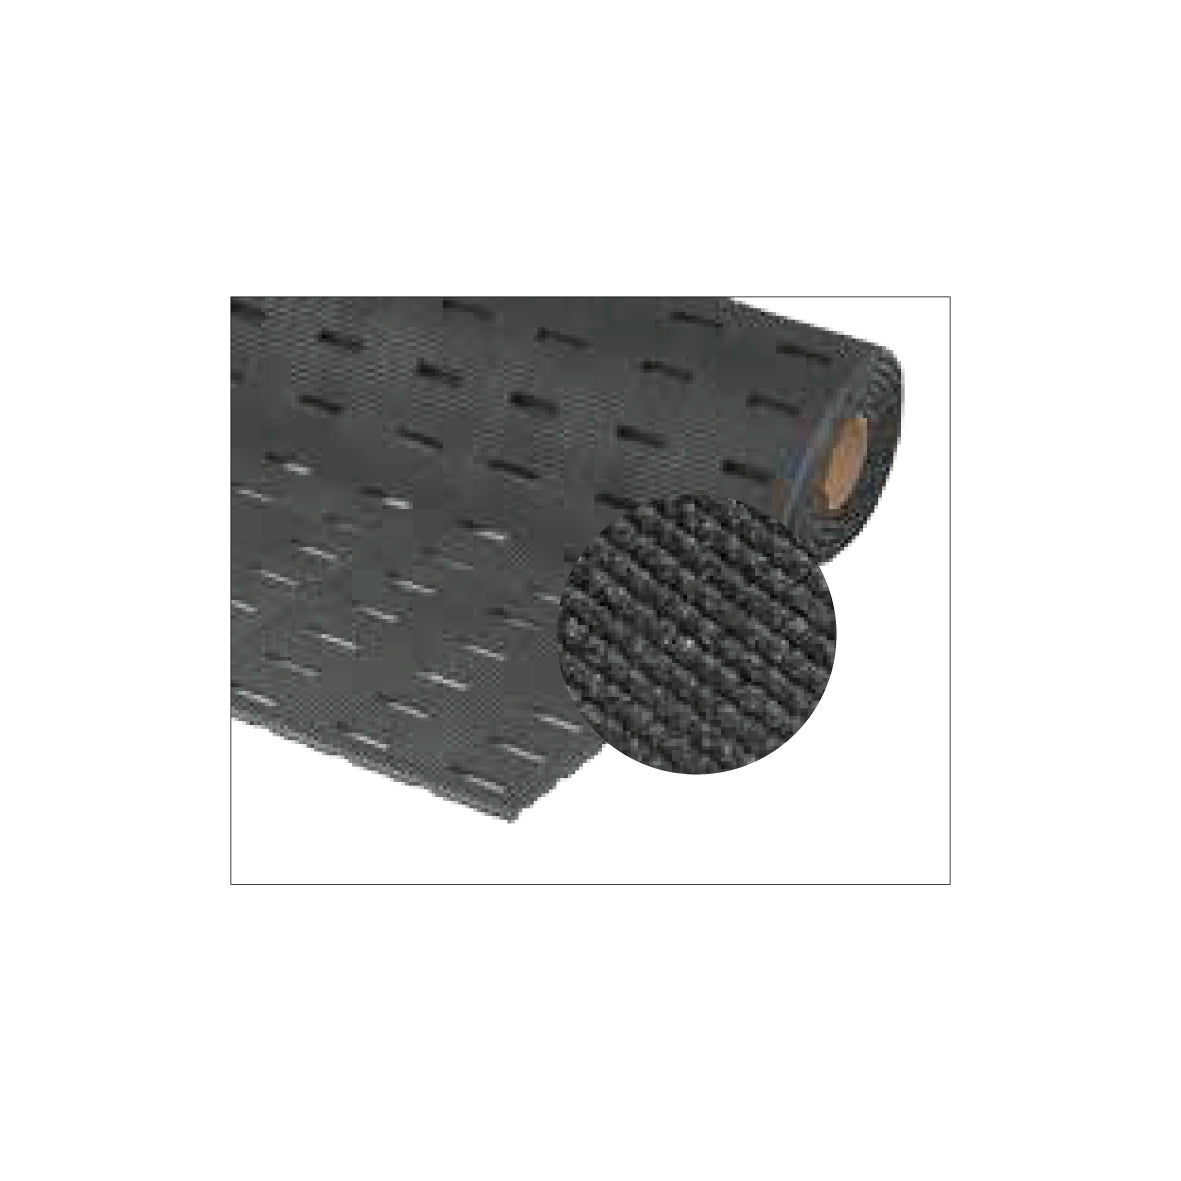 Antirutschmatte Cushion Dek Grip Step, schwarz, 91 x 122 cm, 7.5 kg, Stärke 11.0 mm